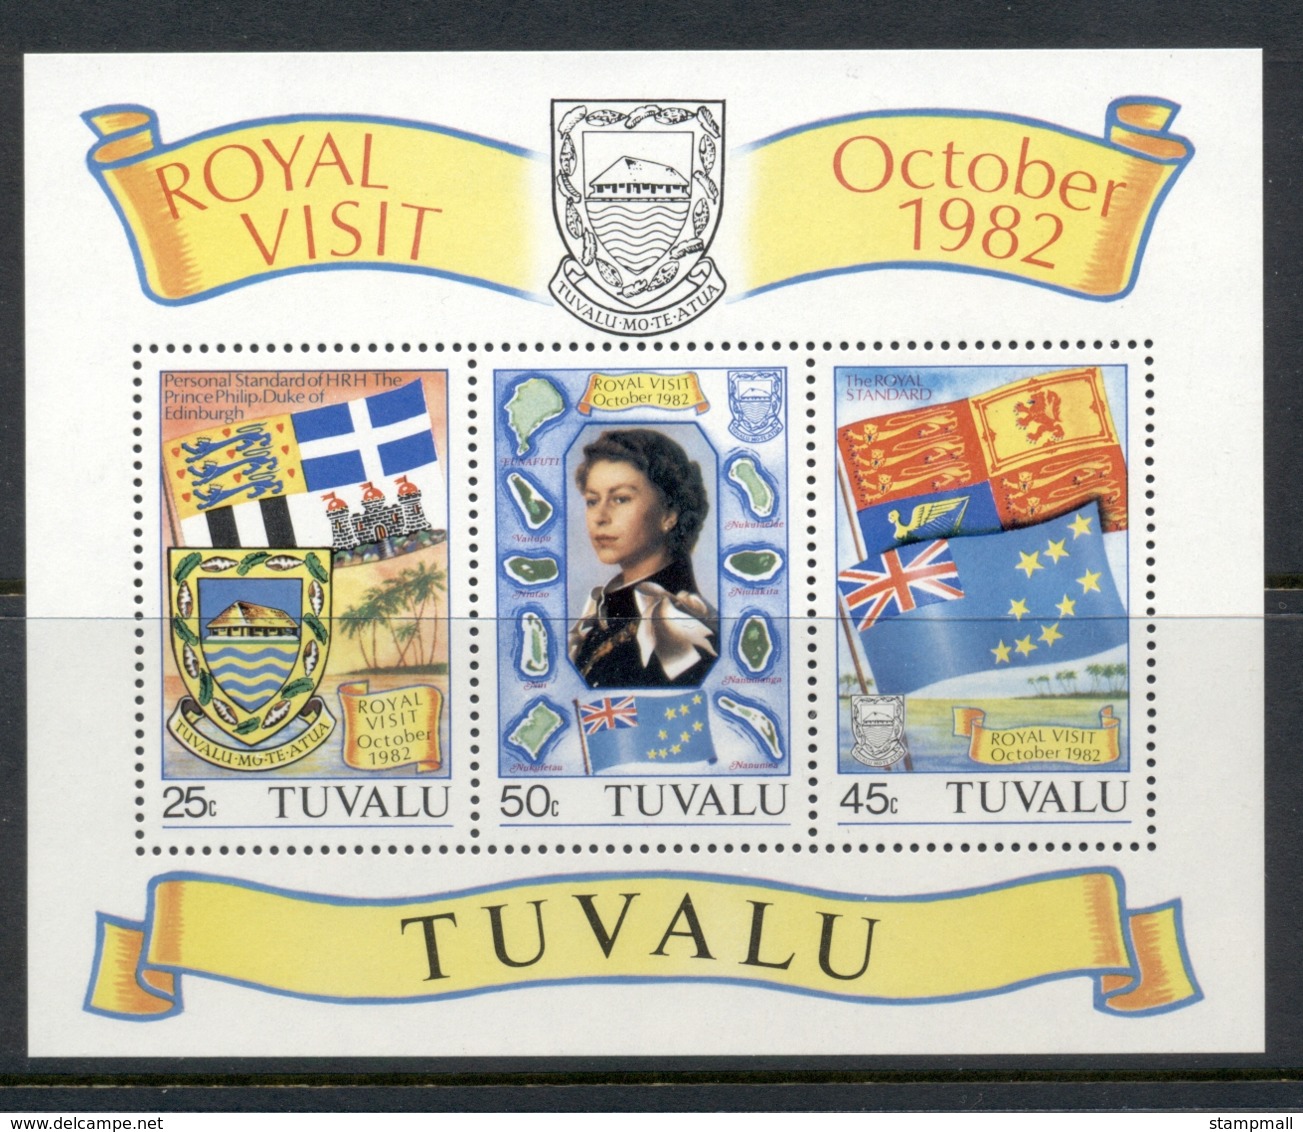 Tuvalu 1982 QEII Royal Visit MS MUH - Tuvalu